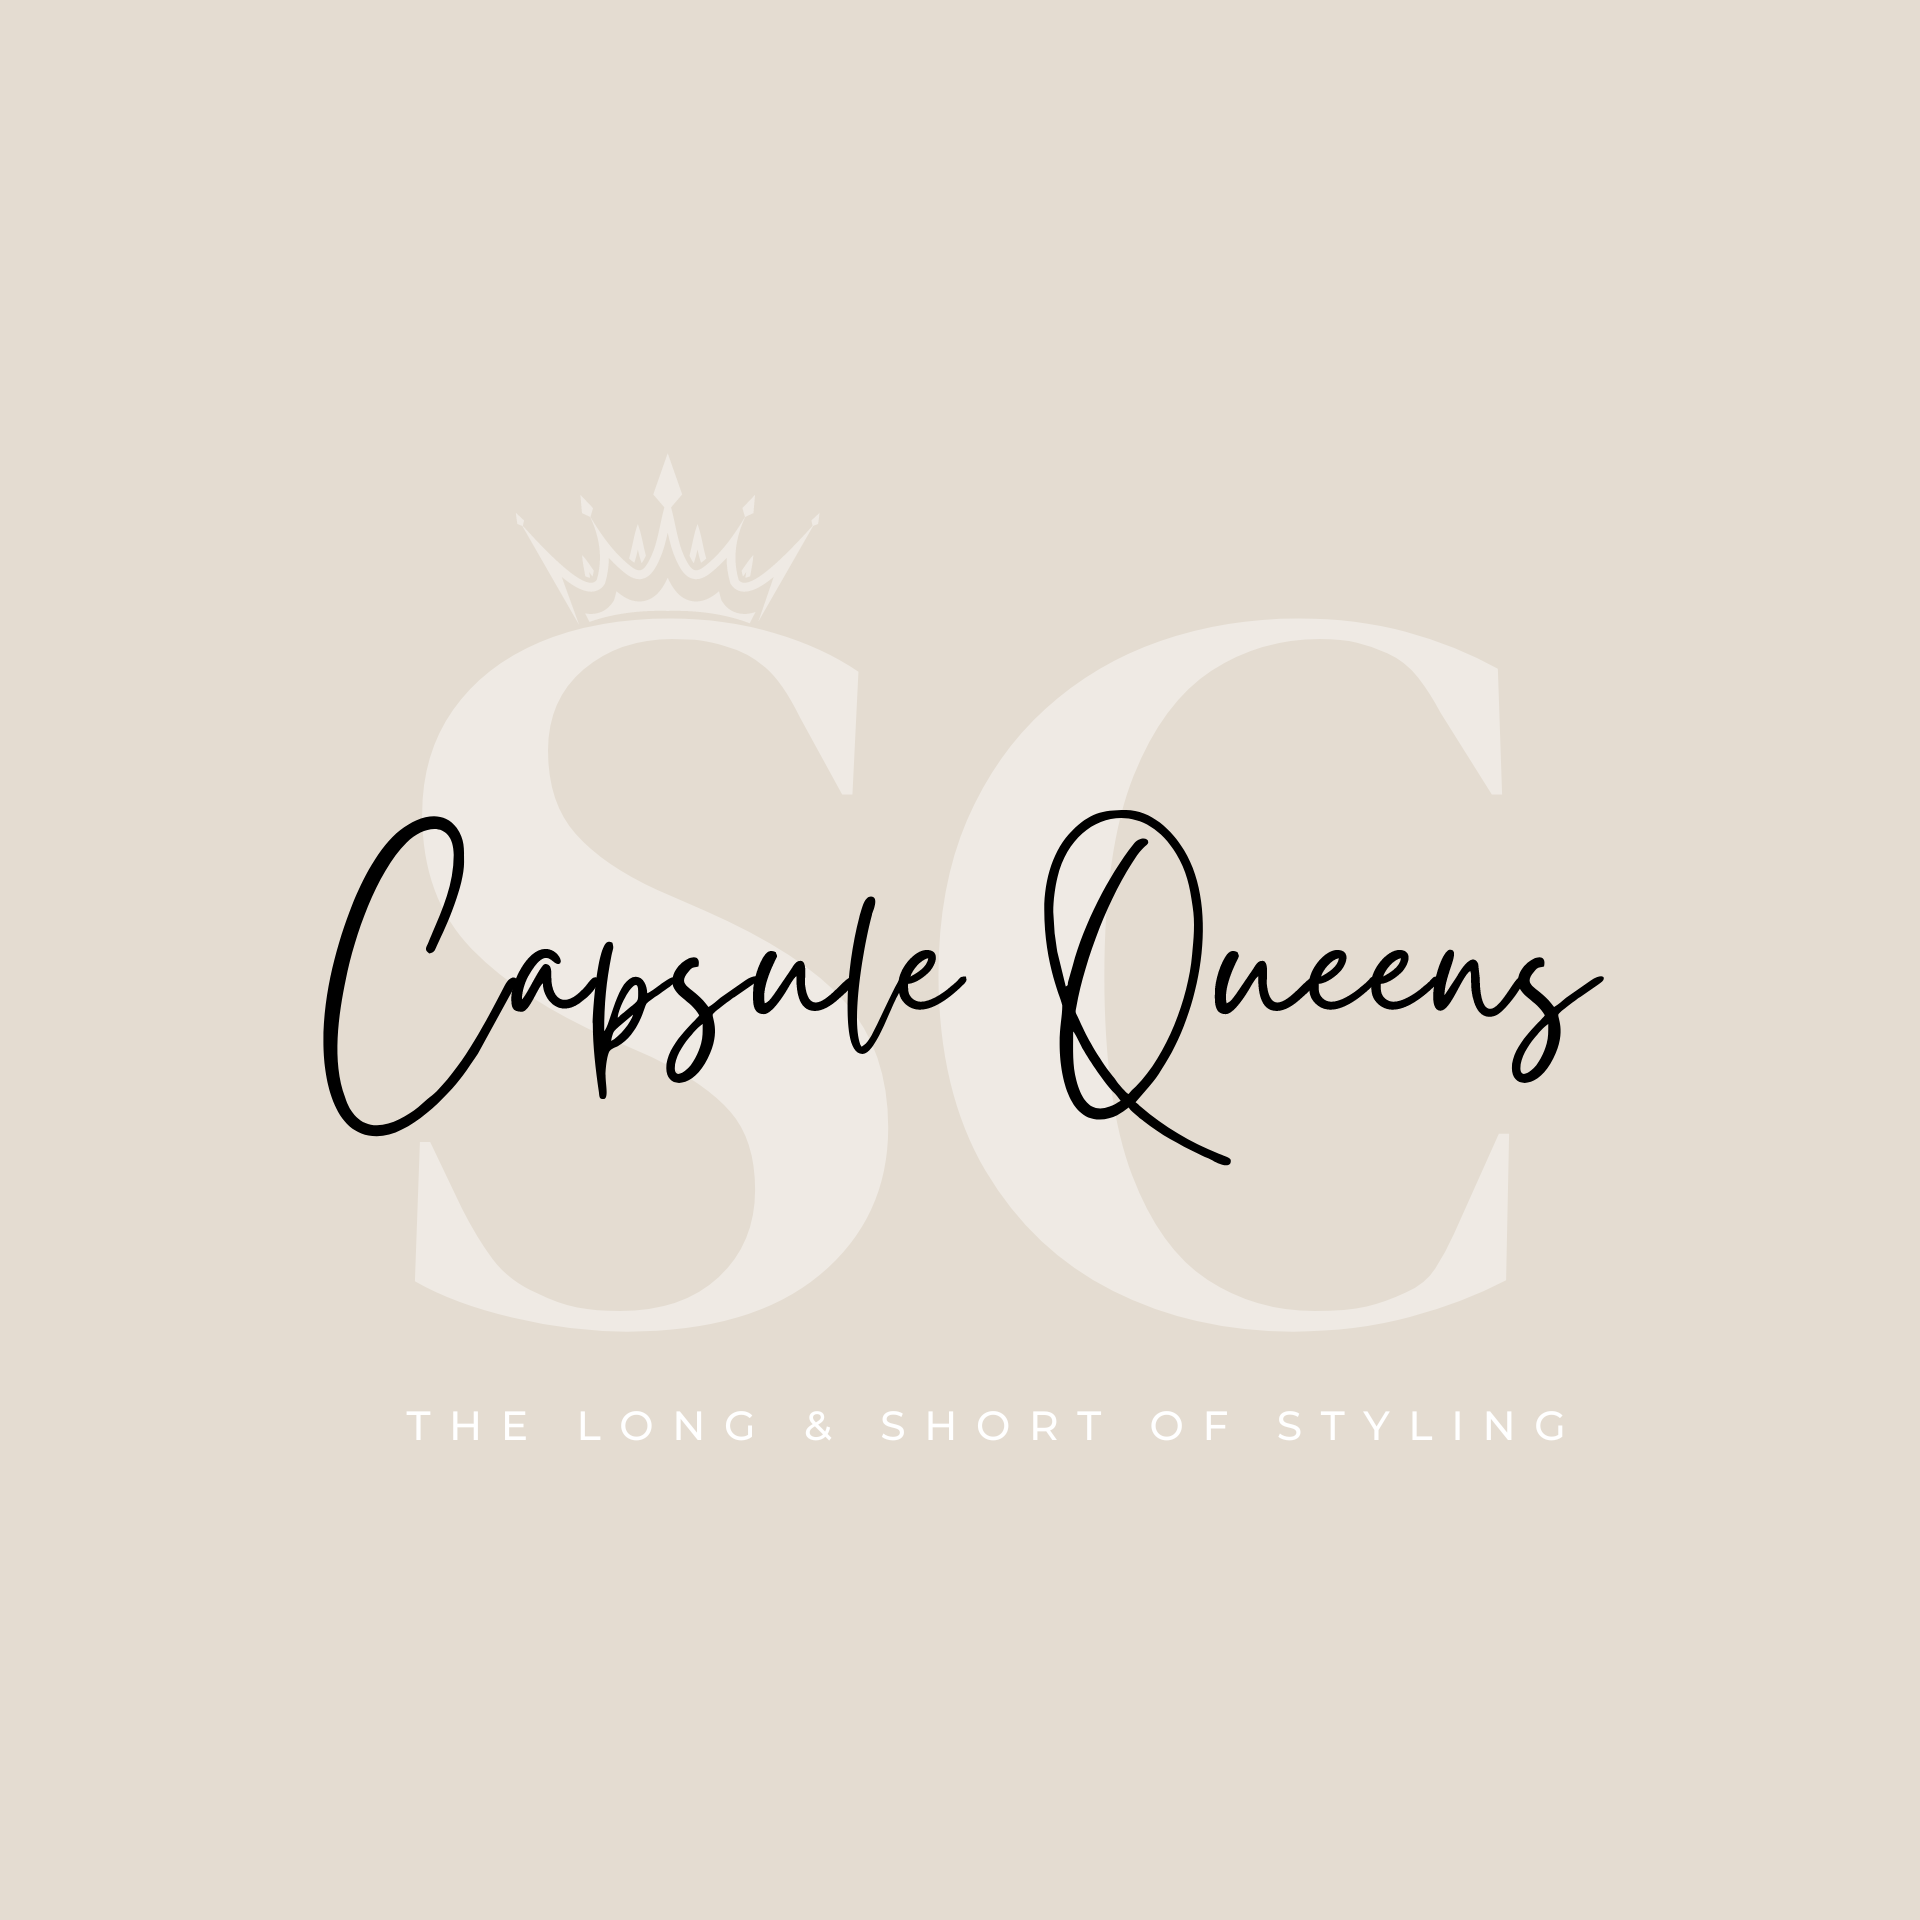 capsule queens-3.png